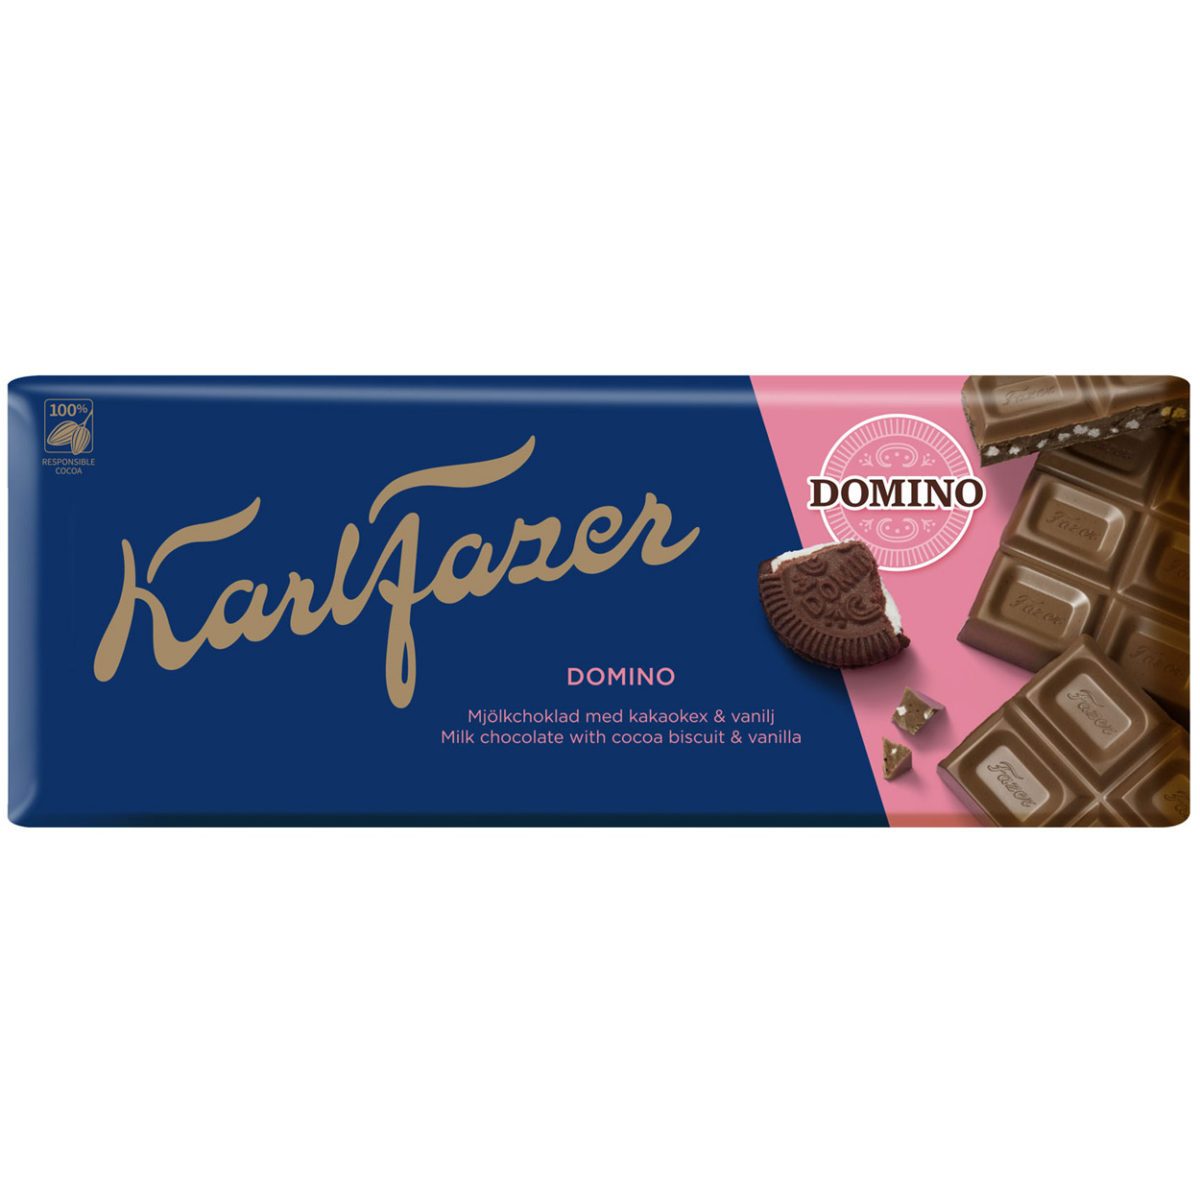 Karl Fazer Domino milk chocolate (195g) 1